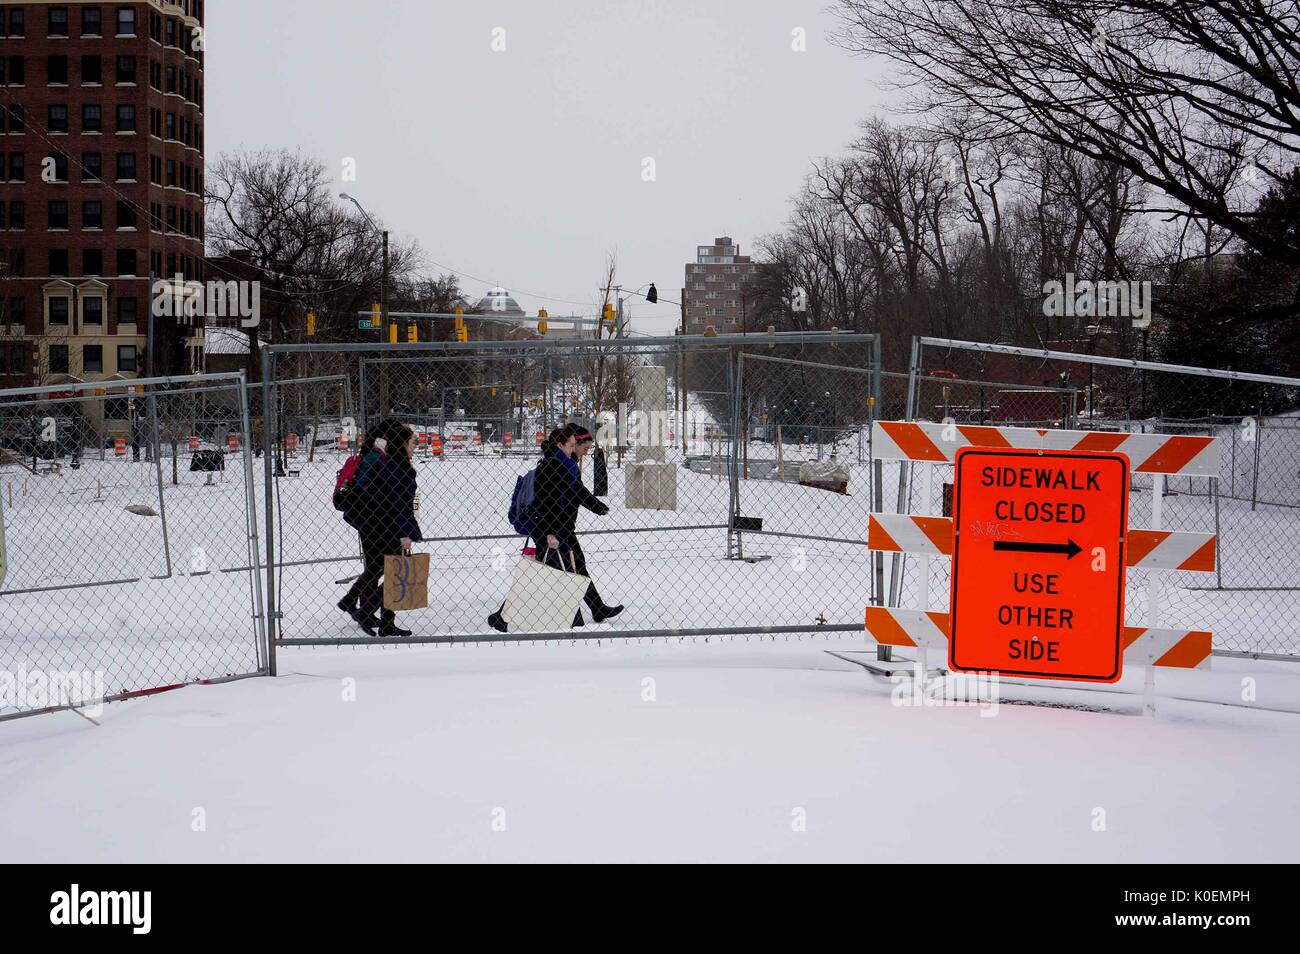 Gli studenti del college attraversano Charles Street, coperta di neve e con cartelli e recinzioni intorno ad essa, per raggiungere il campus Homewood della Johns Hopkins University di Baltimora, Maryland, 2014. Cortesia Eric Chen. Foto Stock